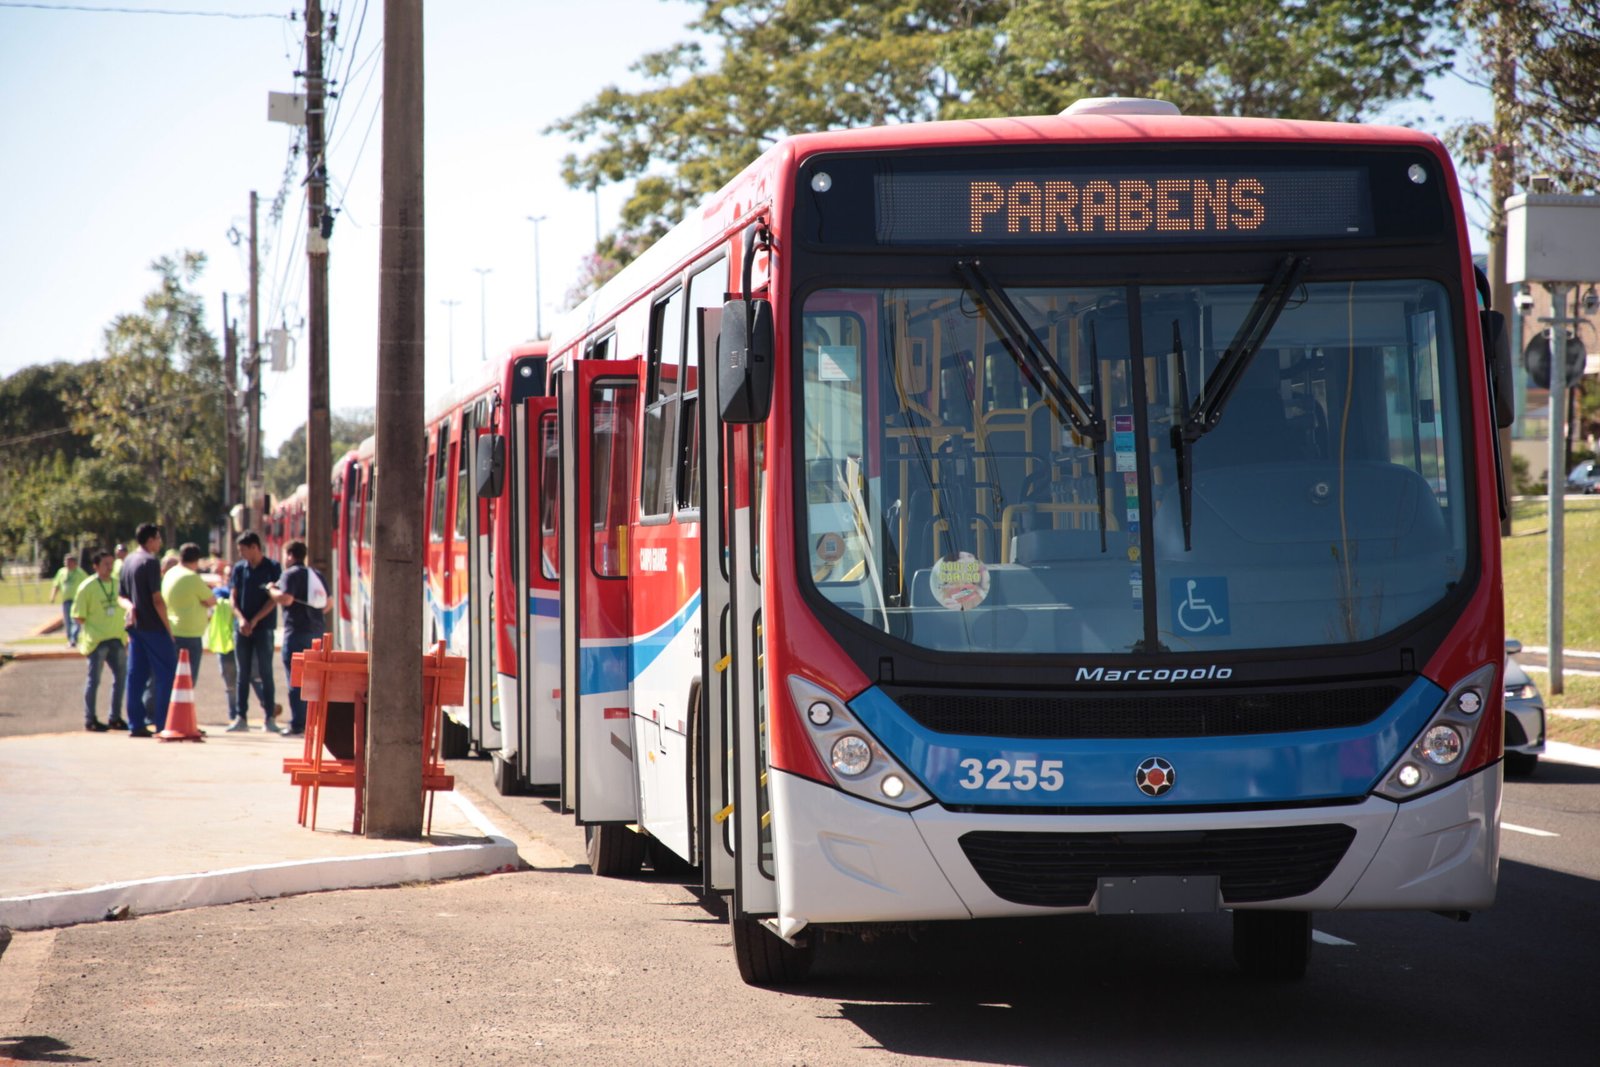 Vereadores acompanham entrega de 71 novos ônibus, resultado de parceria e cobranças por melhorias no transporte